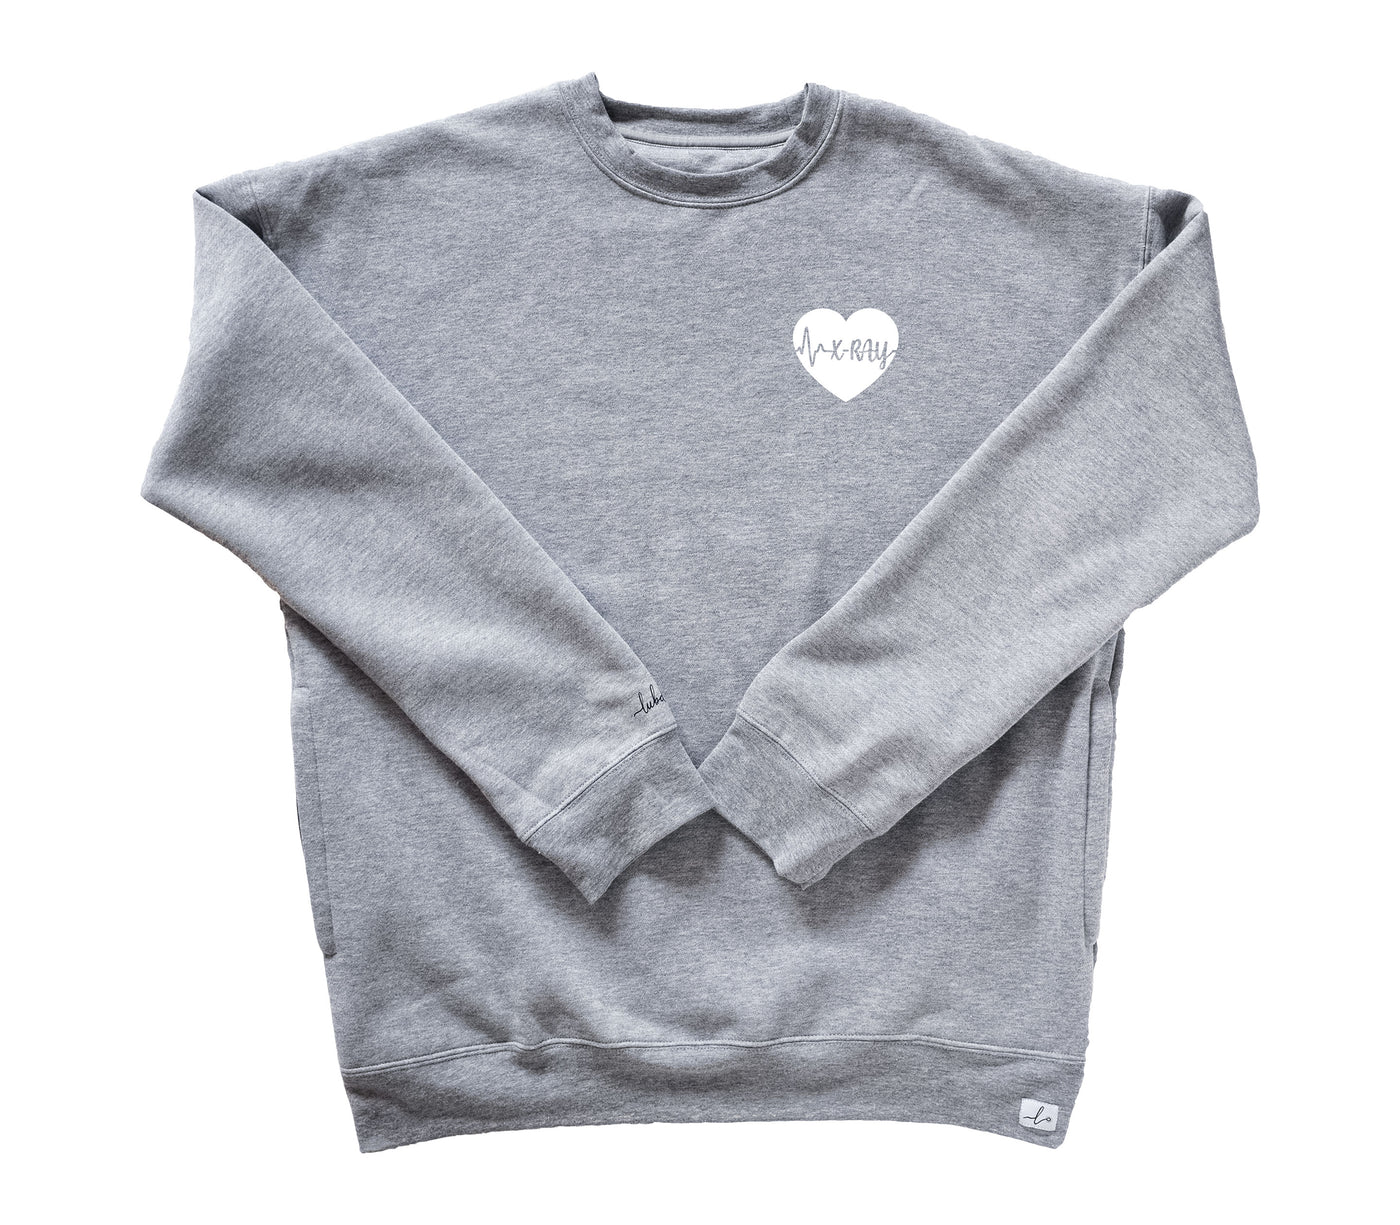 X-Ray ECG Heart - Pocketed Crew Sweatshirt